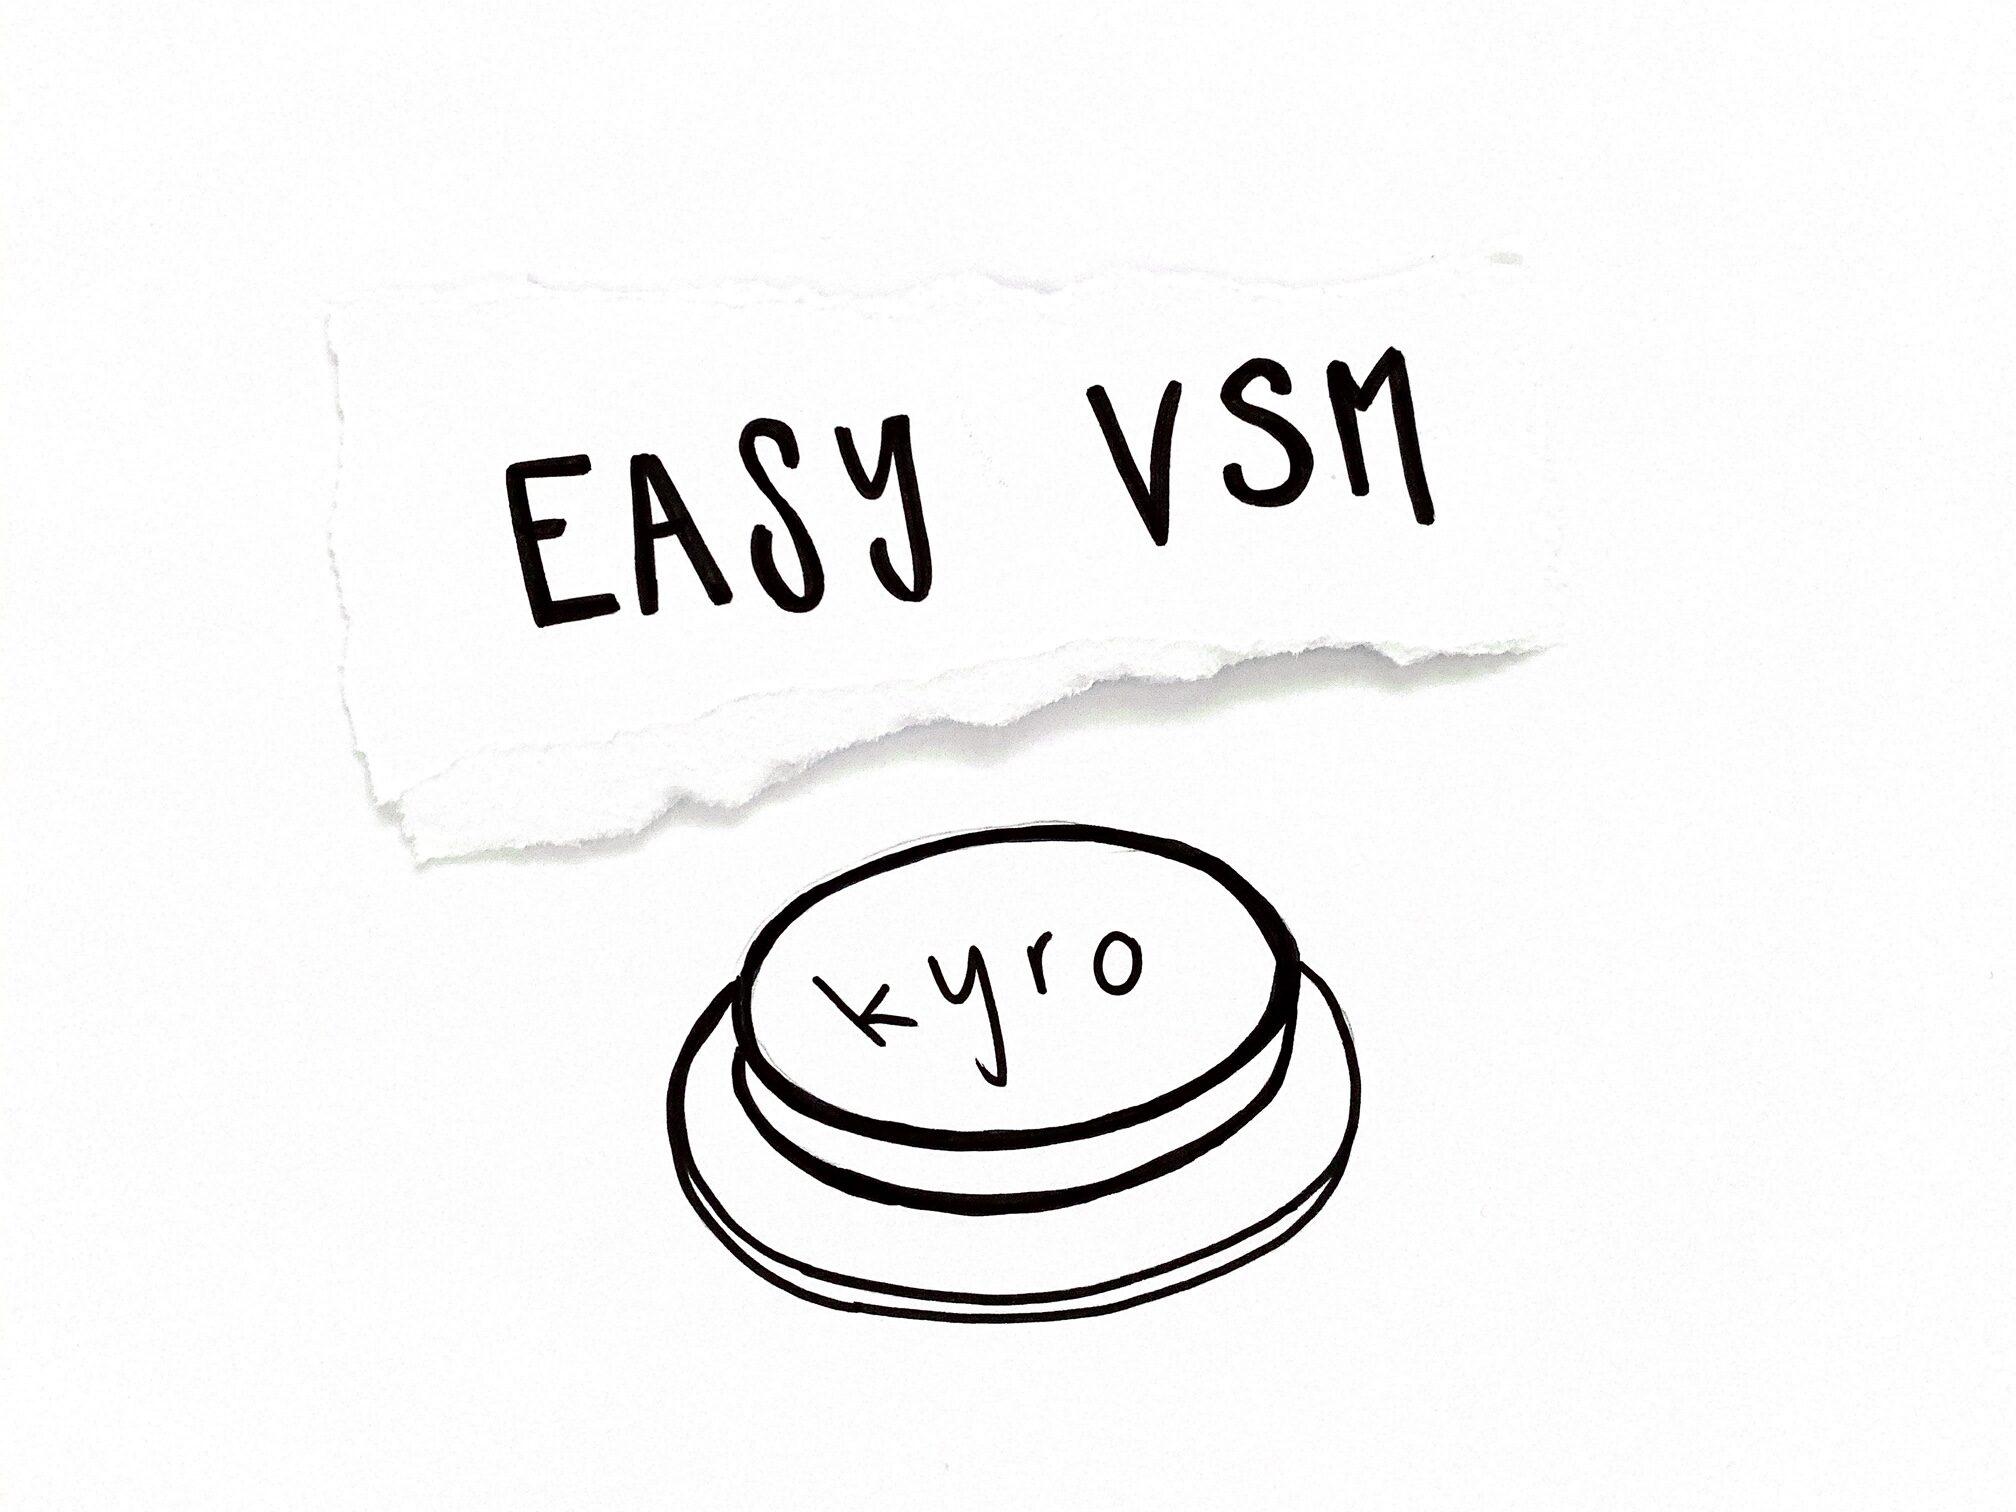 Skizzierter Druckknopf mit der Aufschrift kyro, darüber in Grossbuchstaben Easy VSM